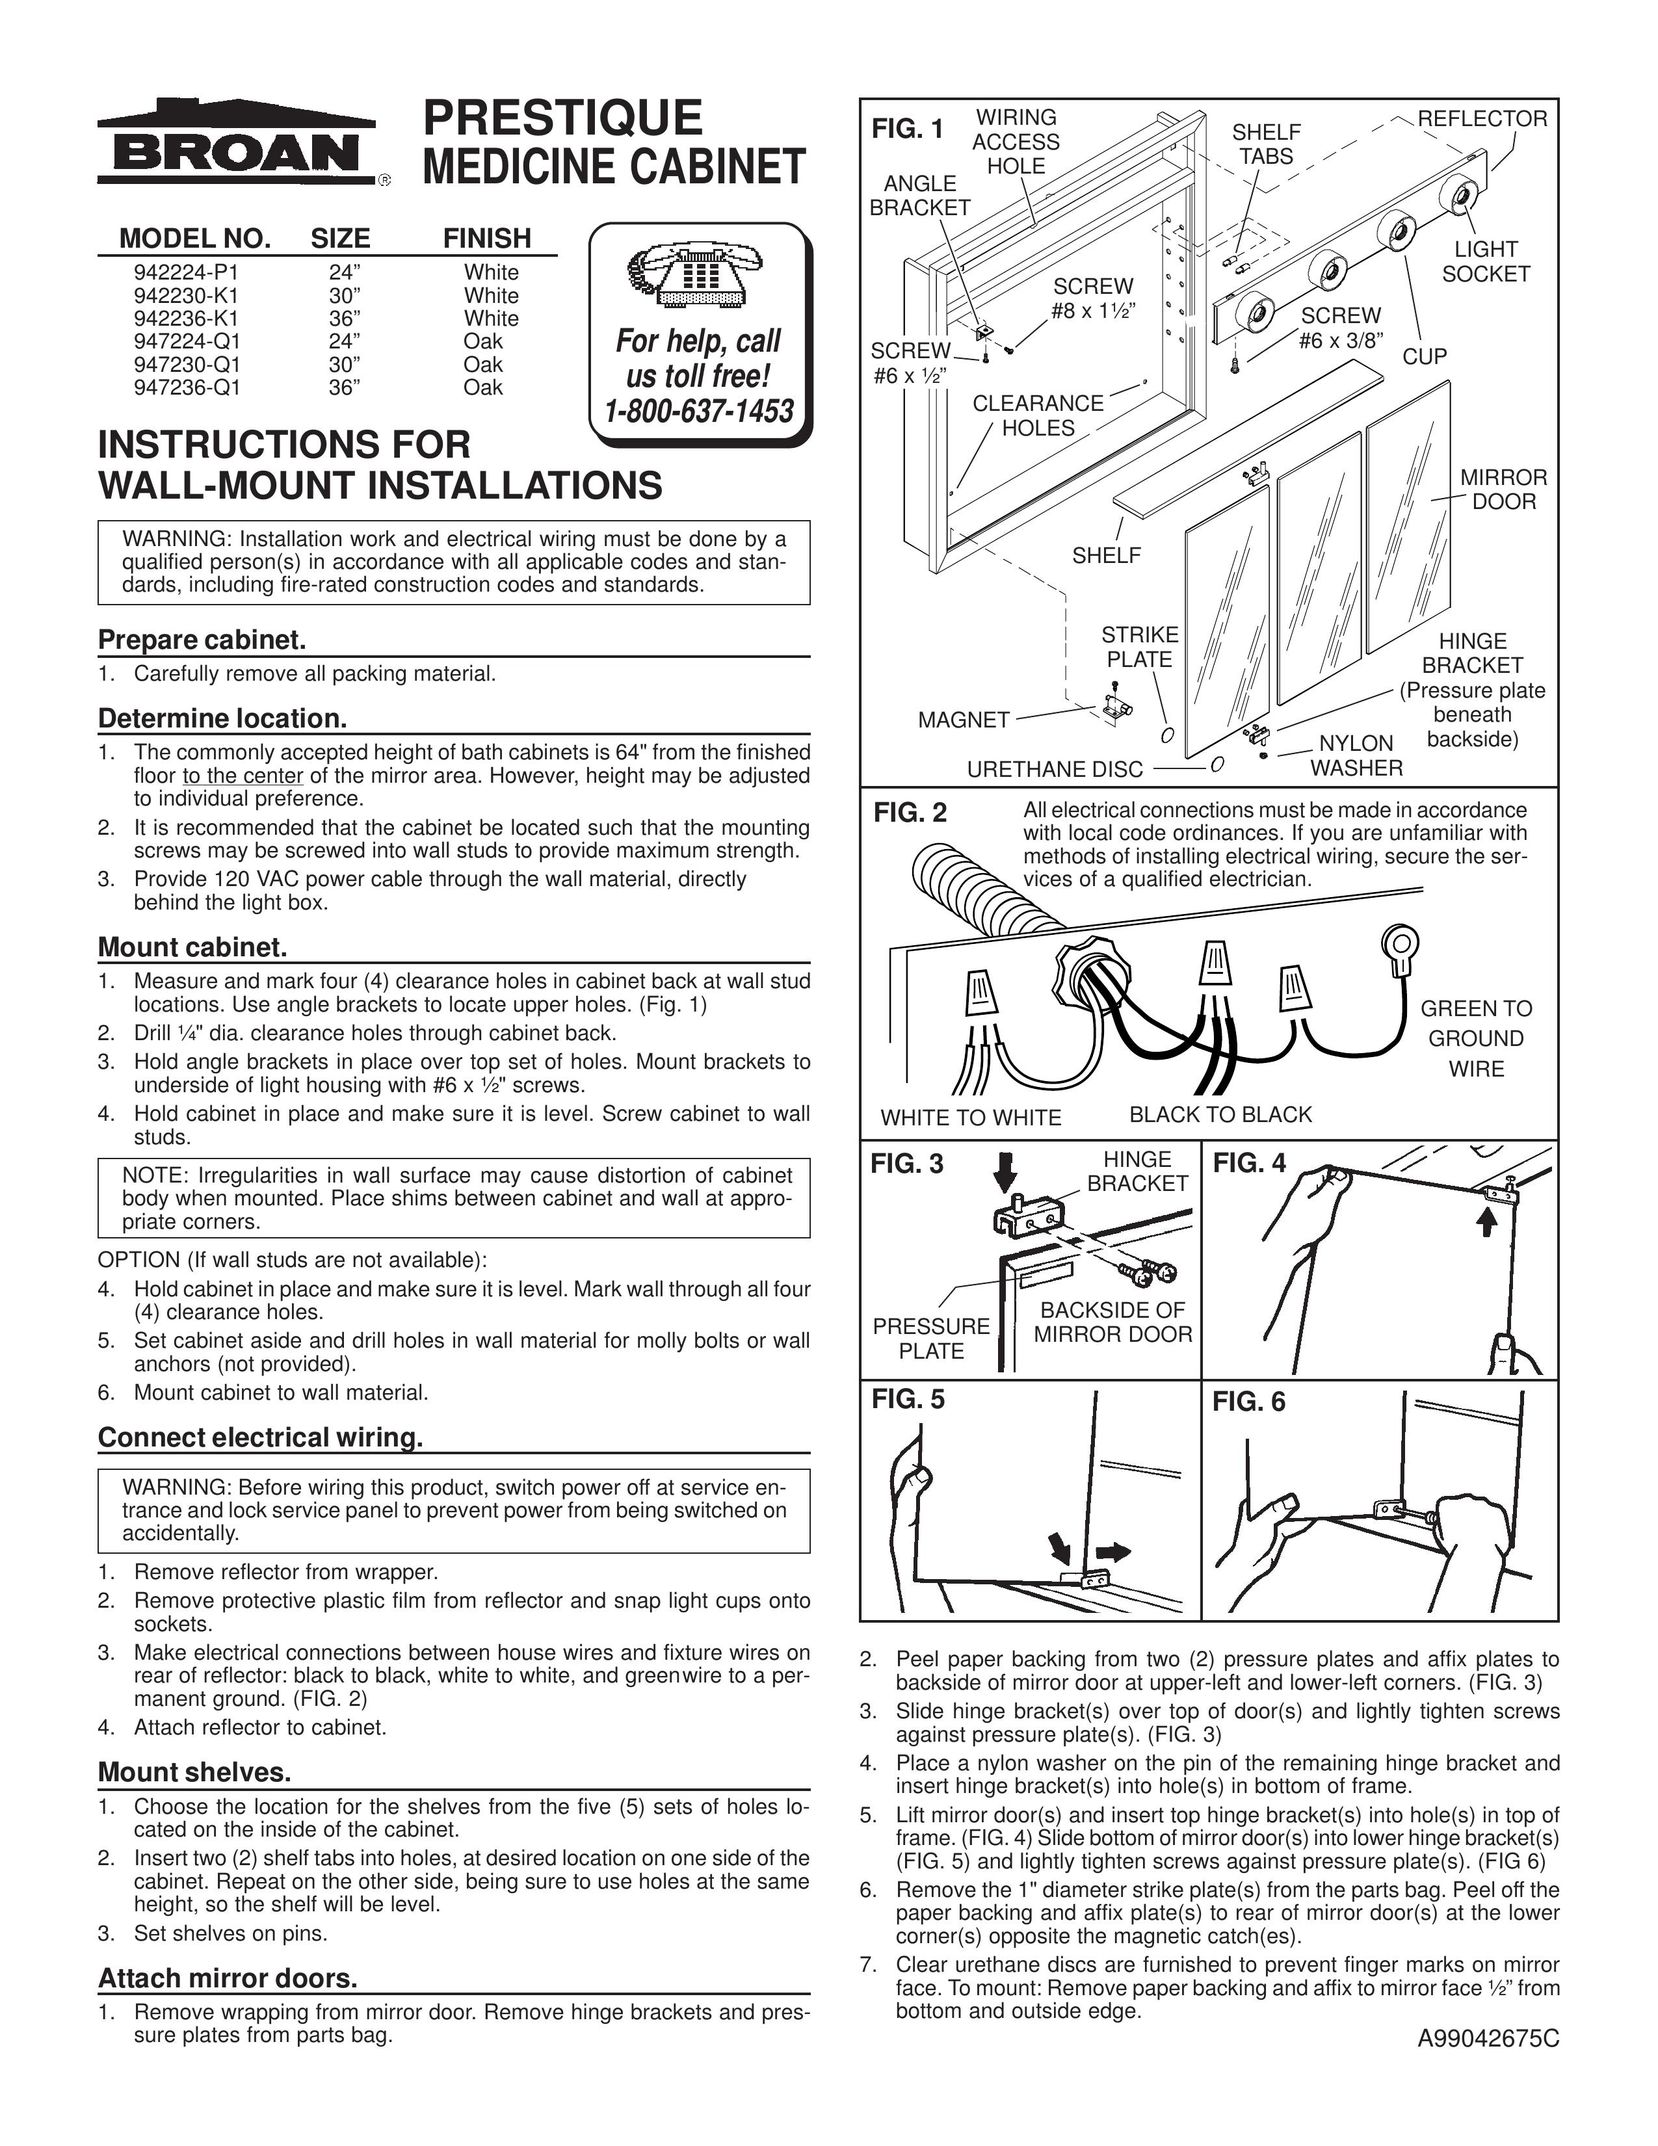 Broan 942230-K1 TV Mount User Manual